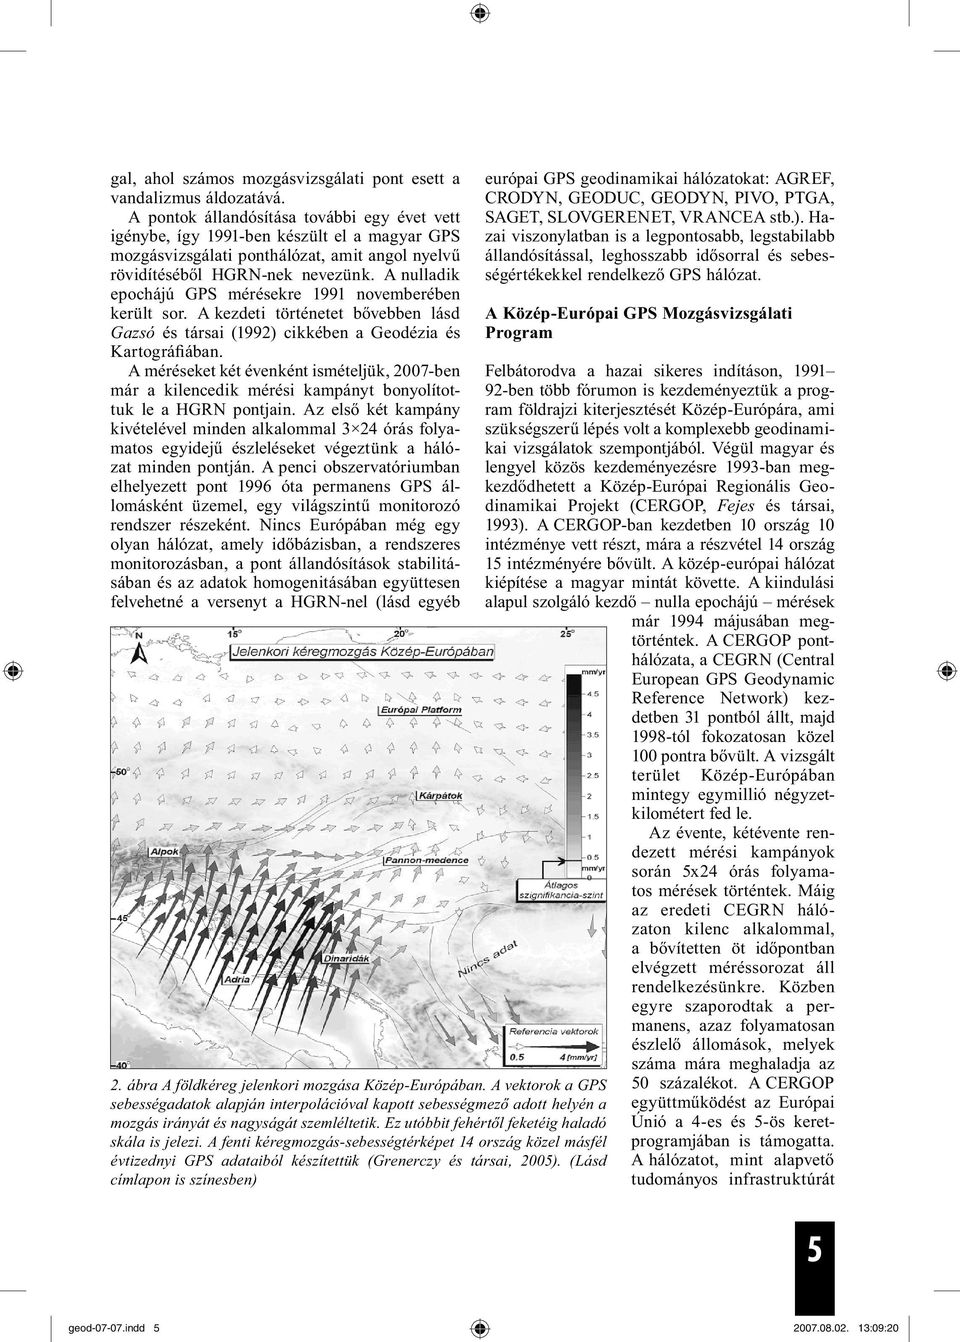 A nulladik epochájú GPS mérésekre 1991 novemberében került sor. A kezdeti történetet bővebben lásd Gazsó és társai (1992) cikkében a Geodézia és Kartográfiában.